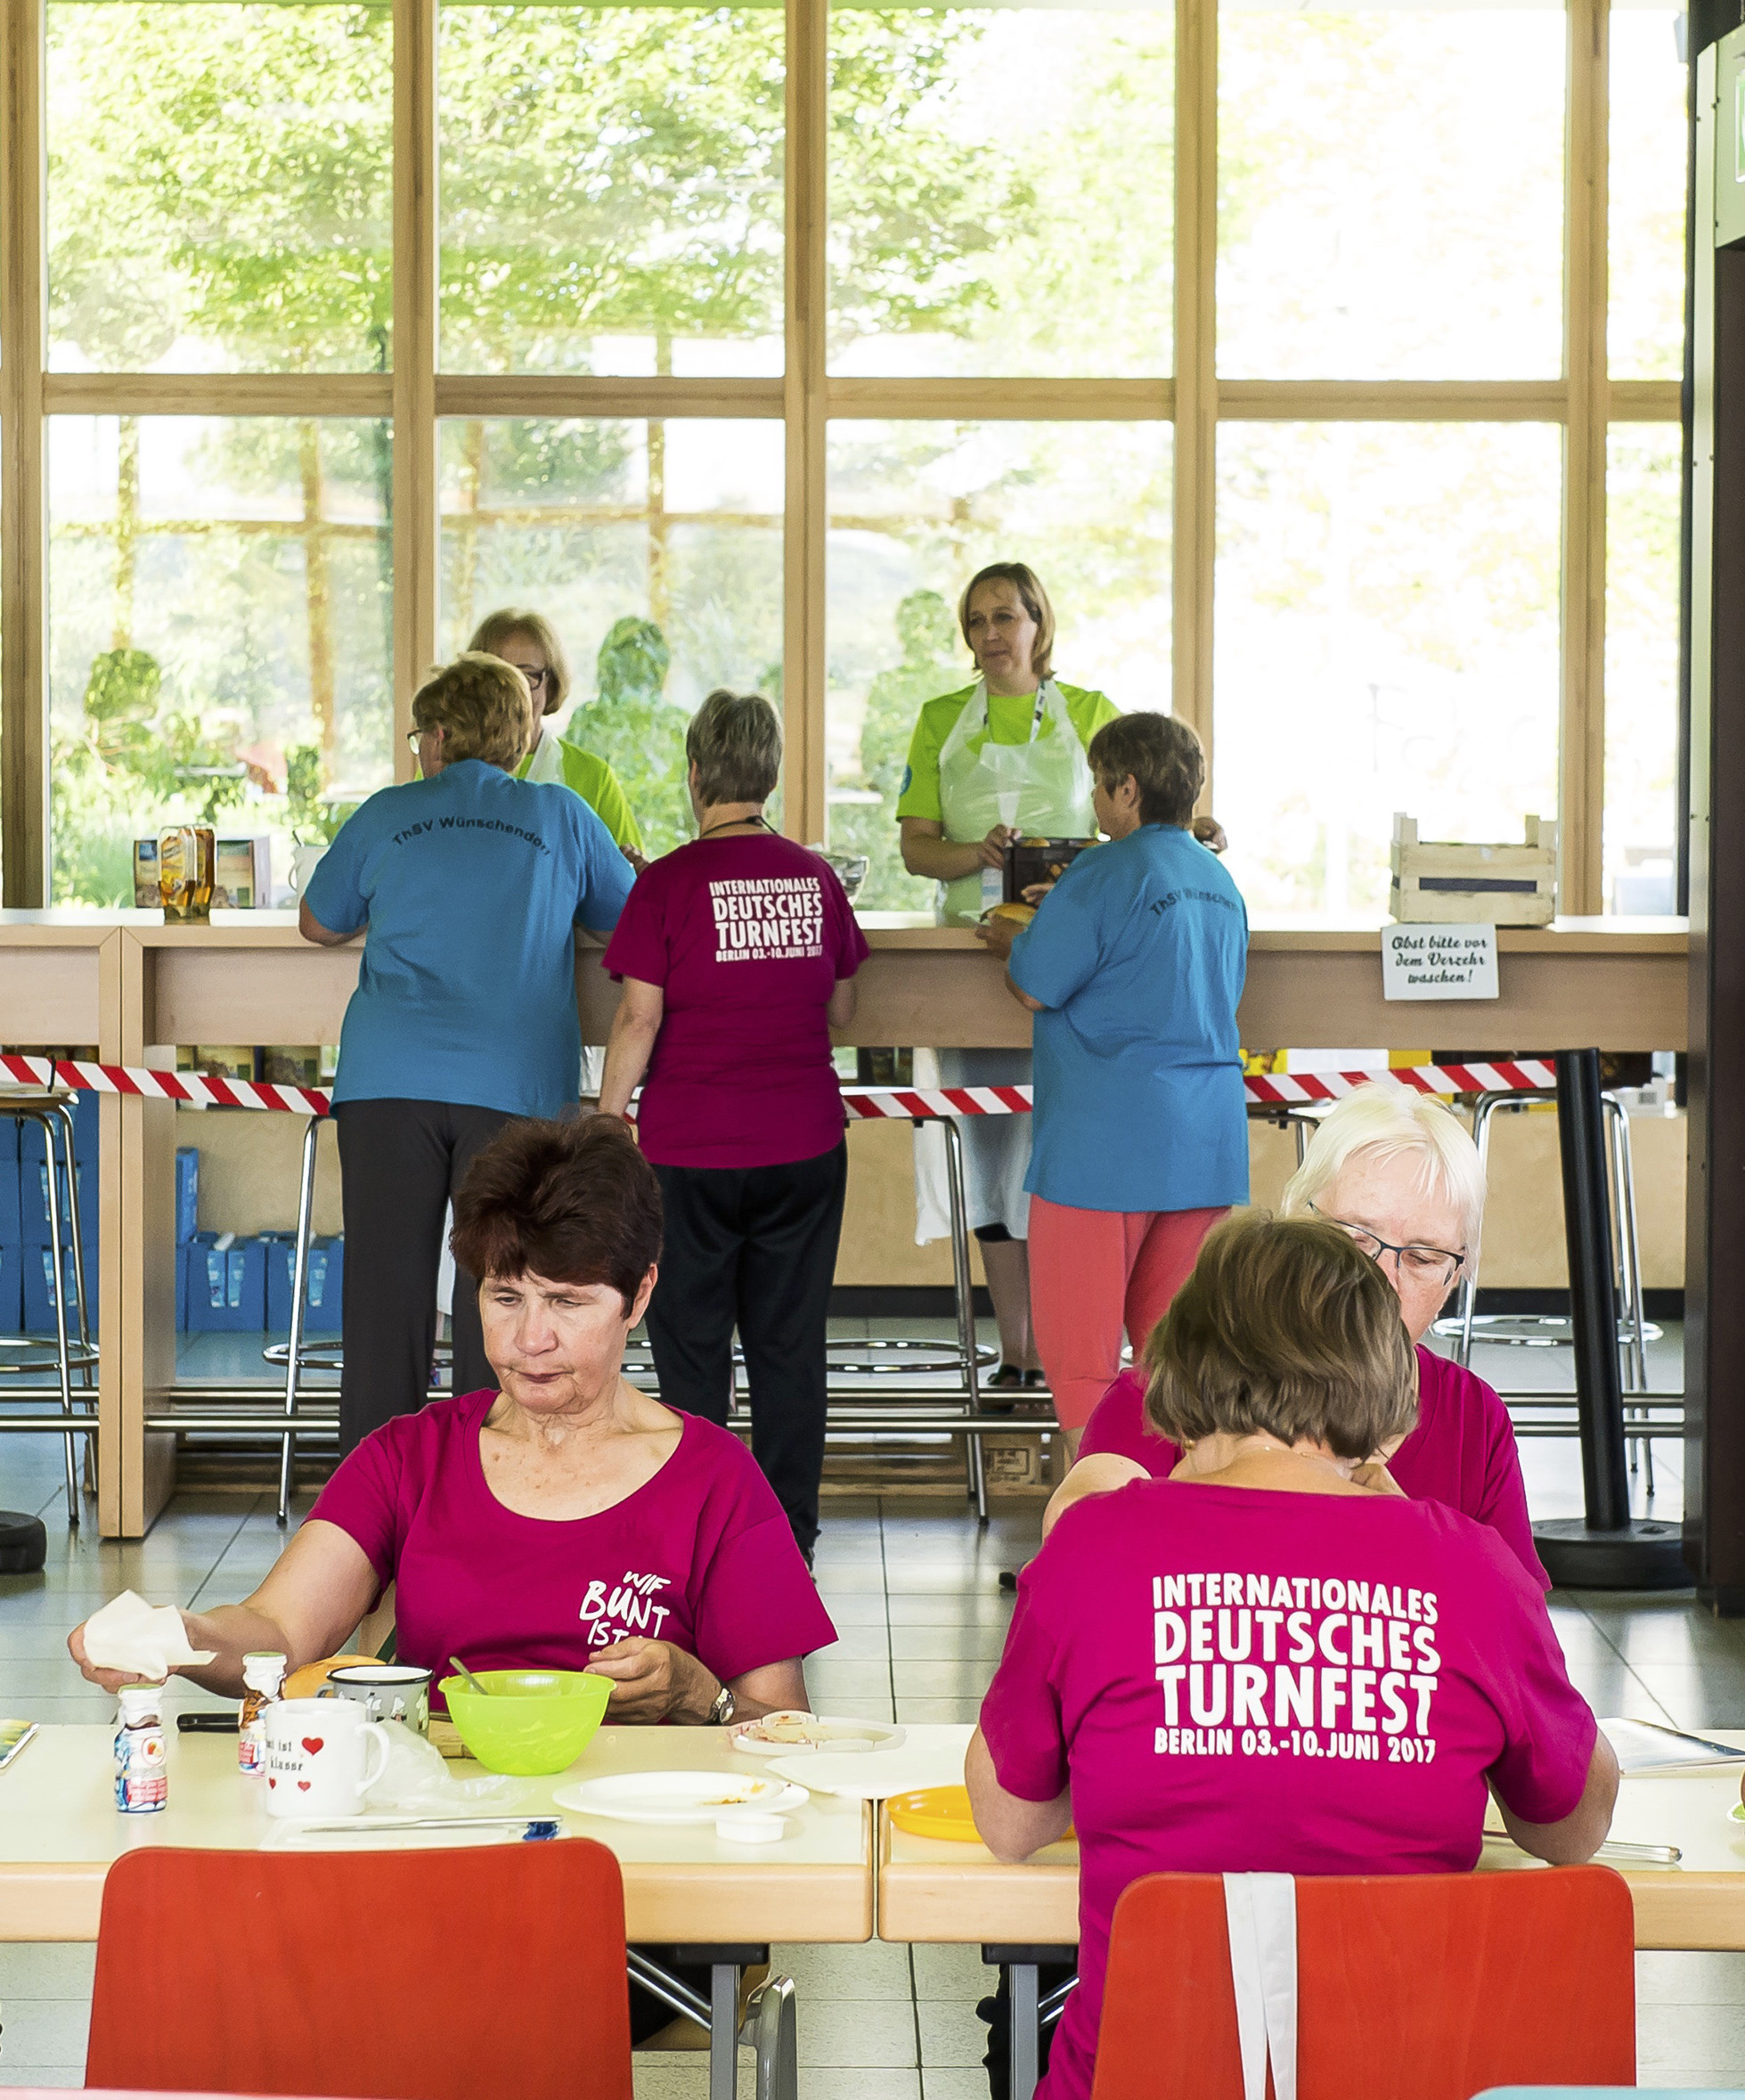 Volunteer-Einsatz beim Frühstück in der Schulunterkunft | Bildquelle: Turnfestfotos